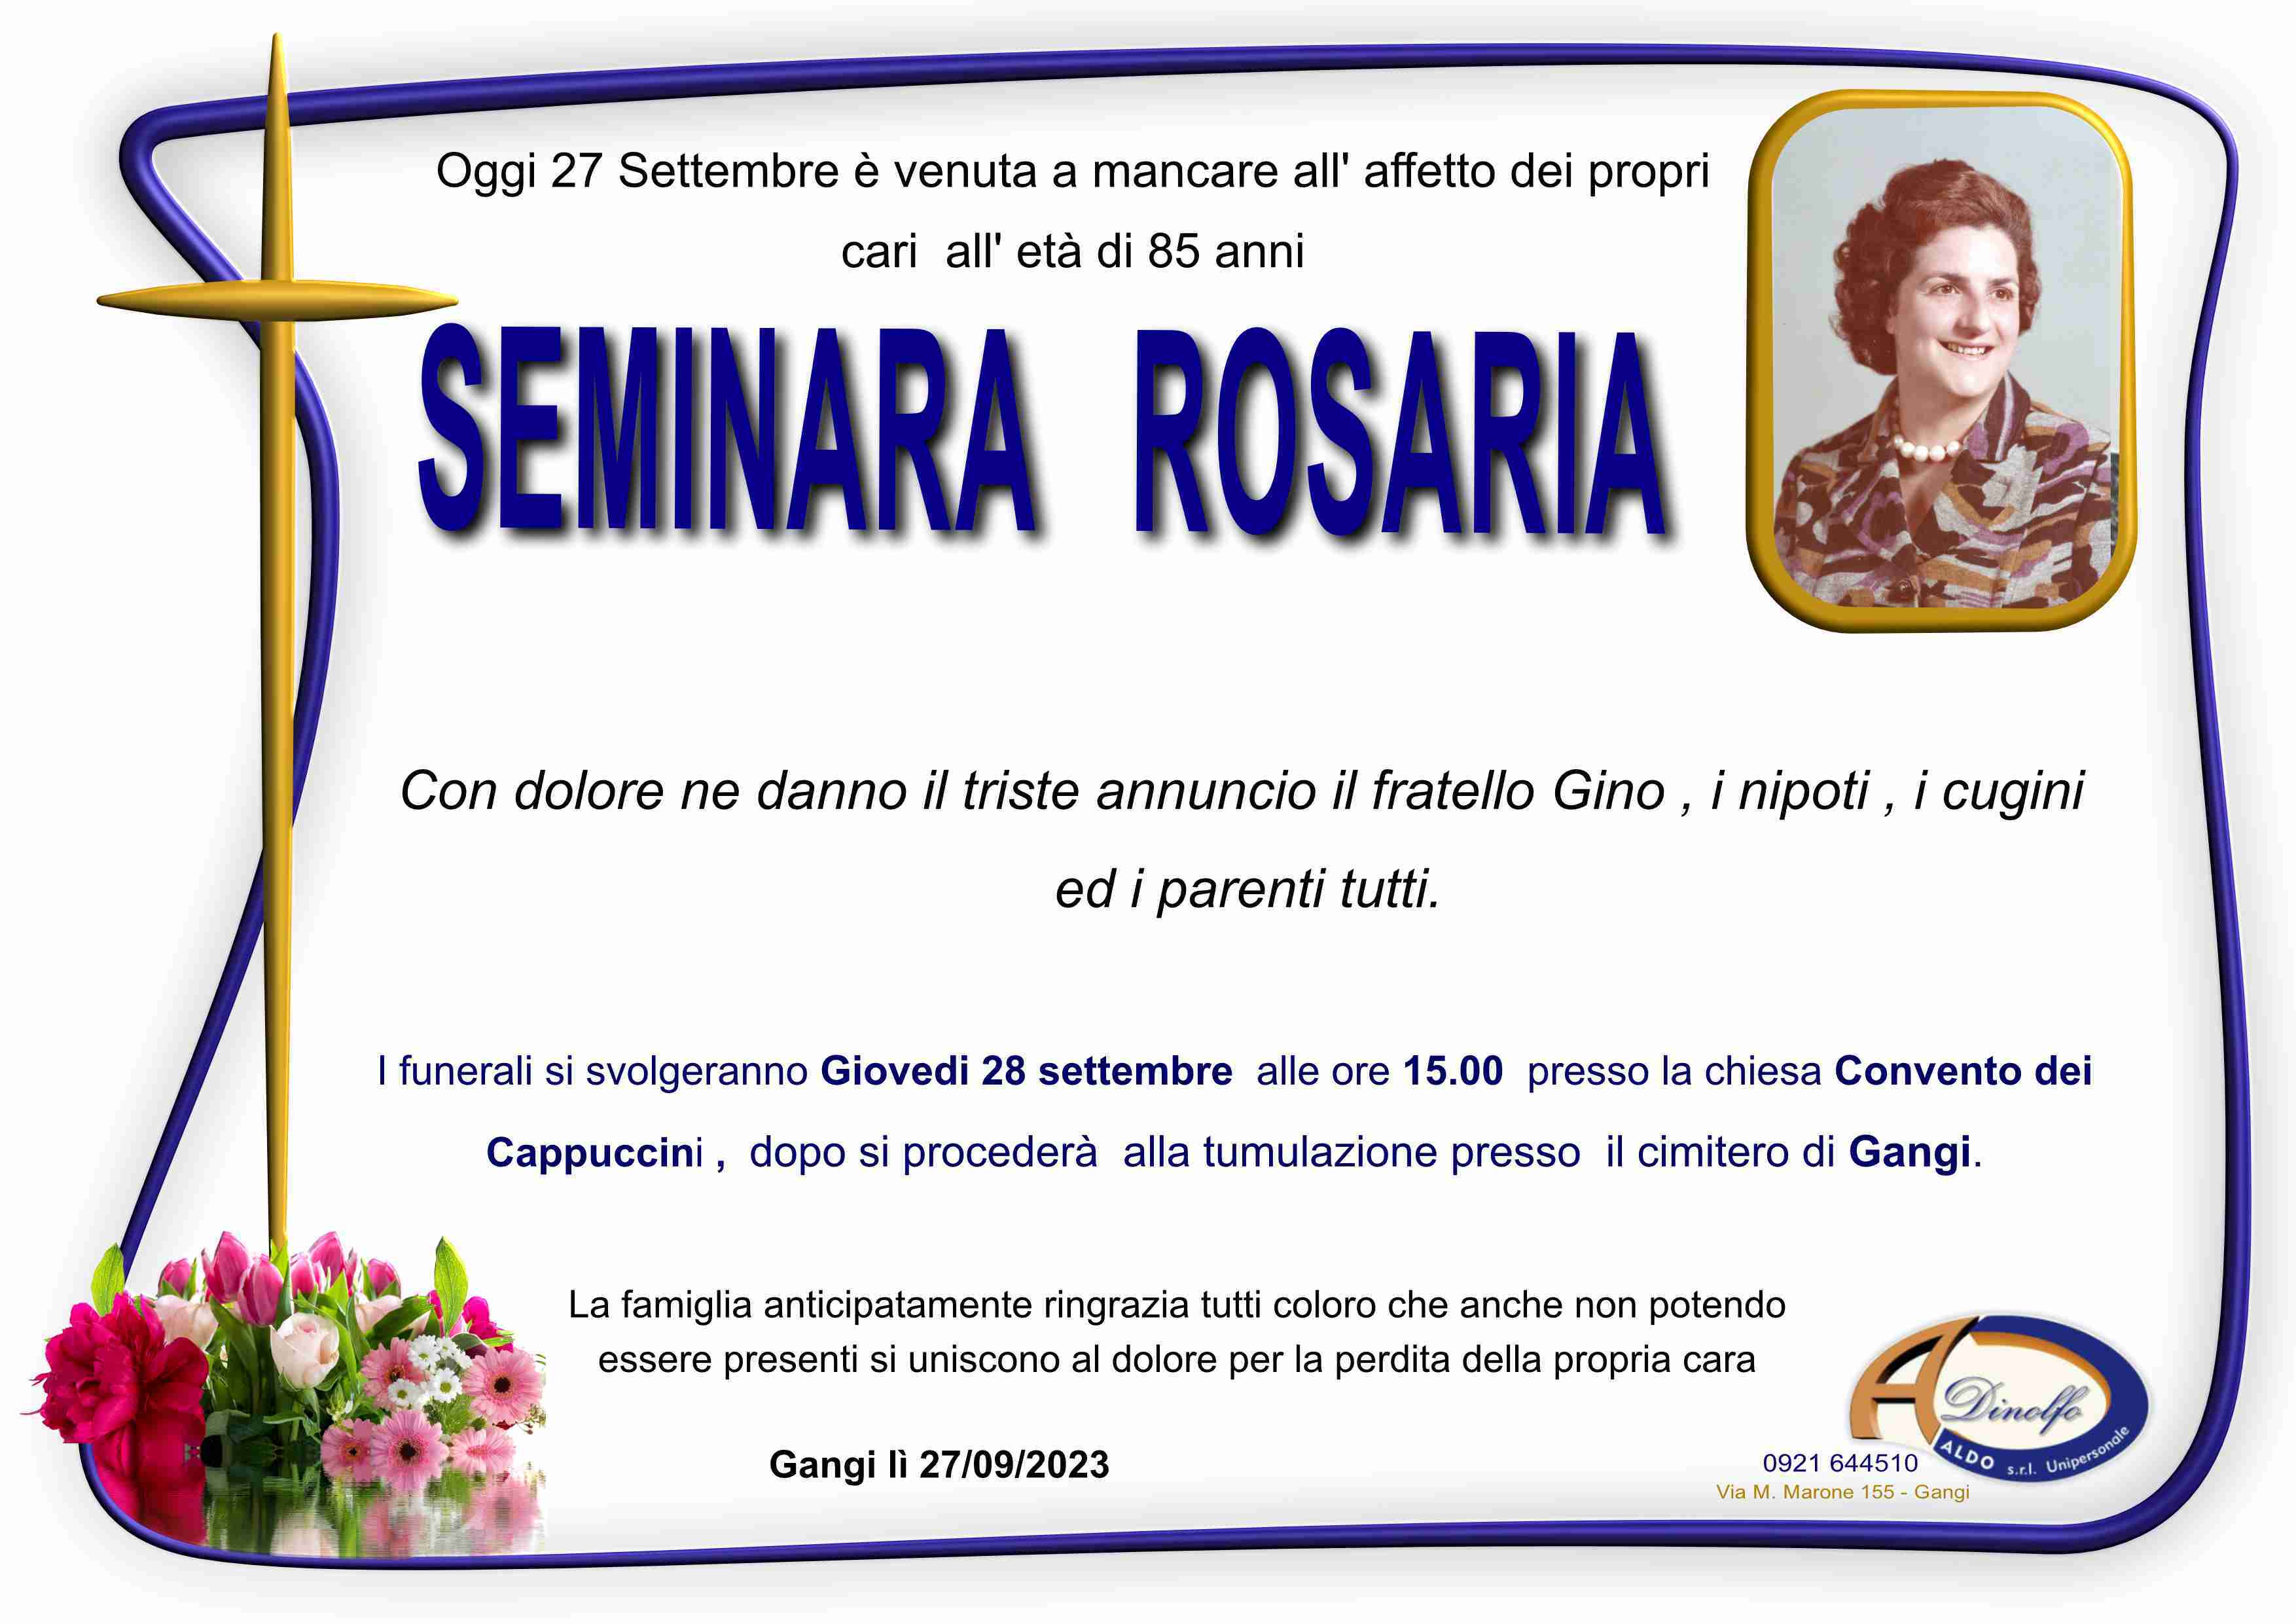 Rosaria Seminara